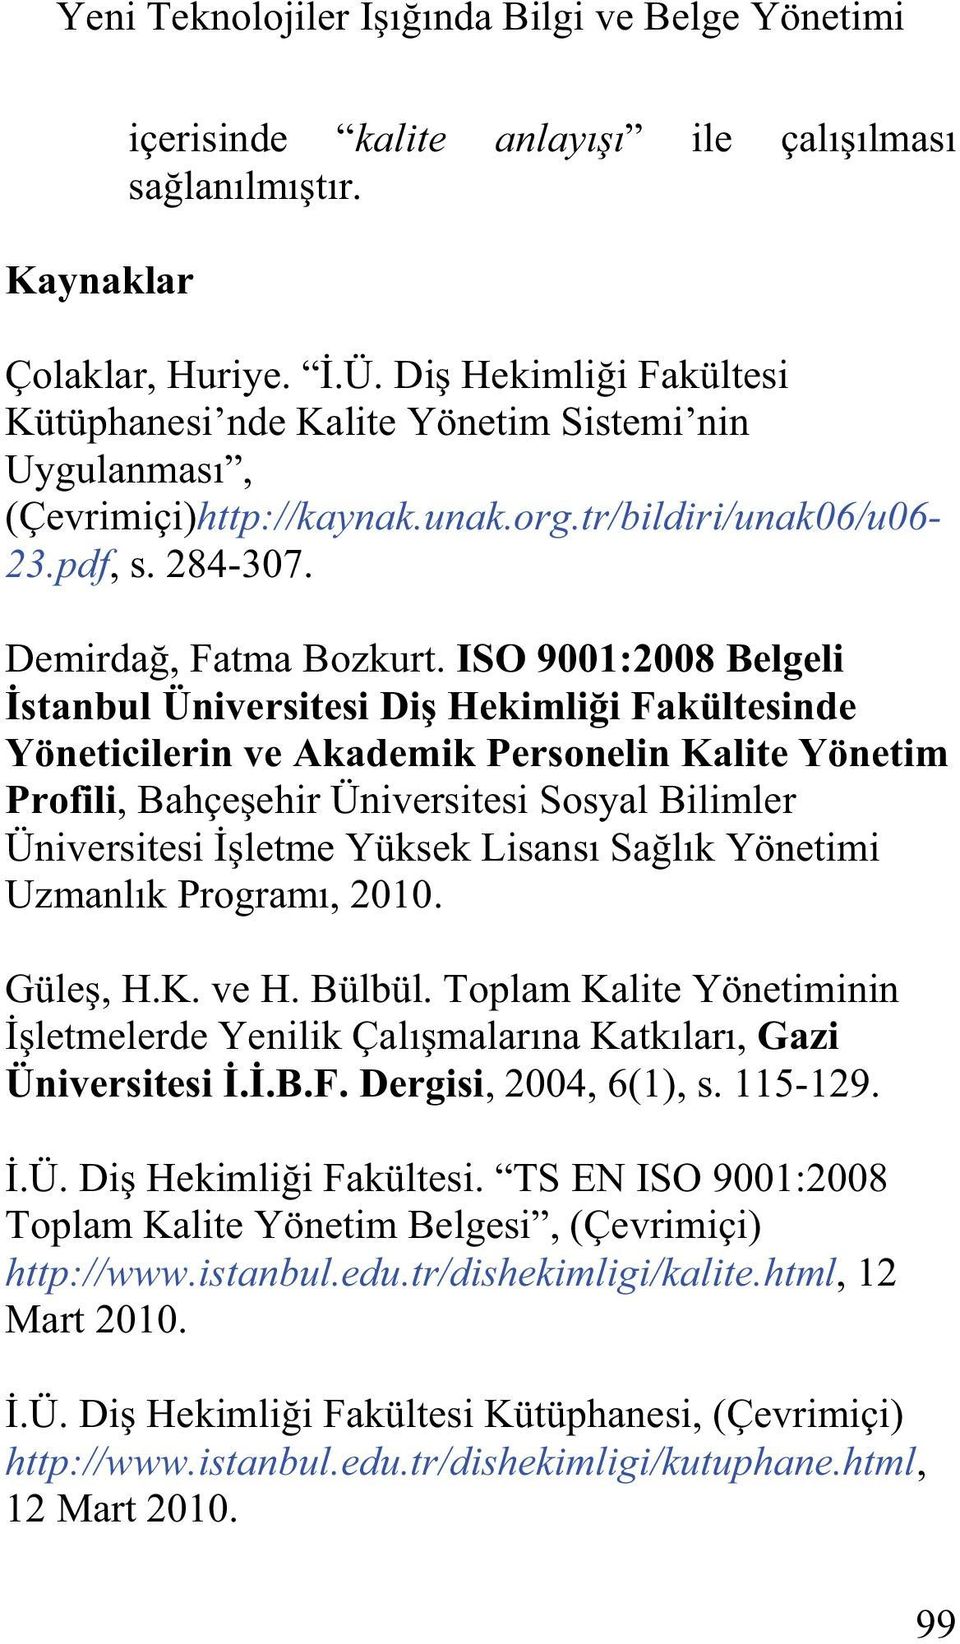 ISO 9001:2008 Belgeli Yöneticilerin ve Akademik Personelin Kalite Yönetim Profili. Gazi, 2004, 6(1), s.